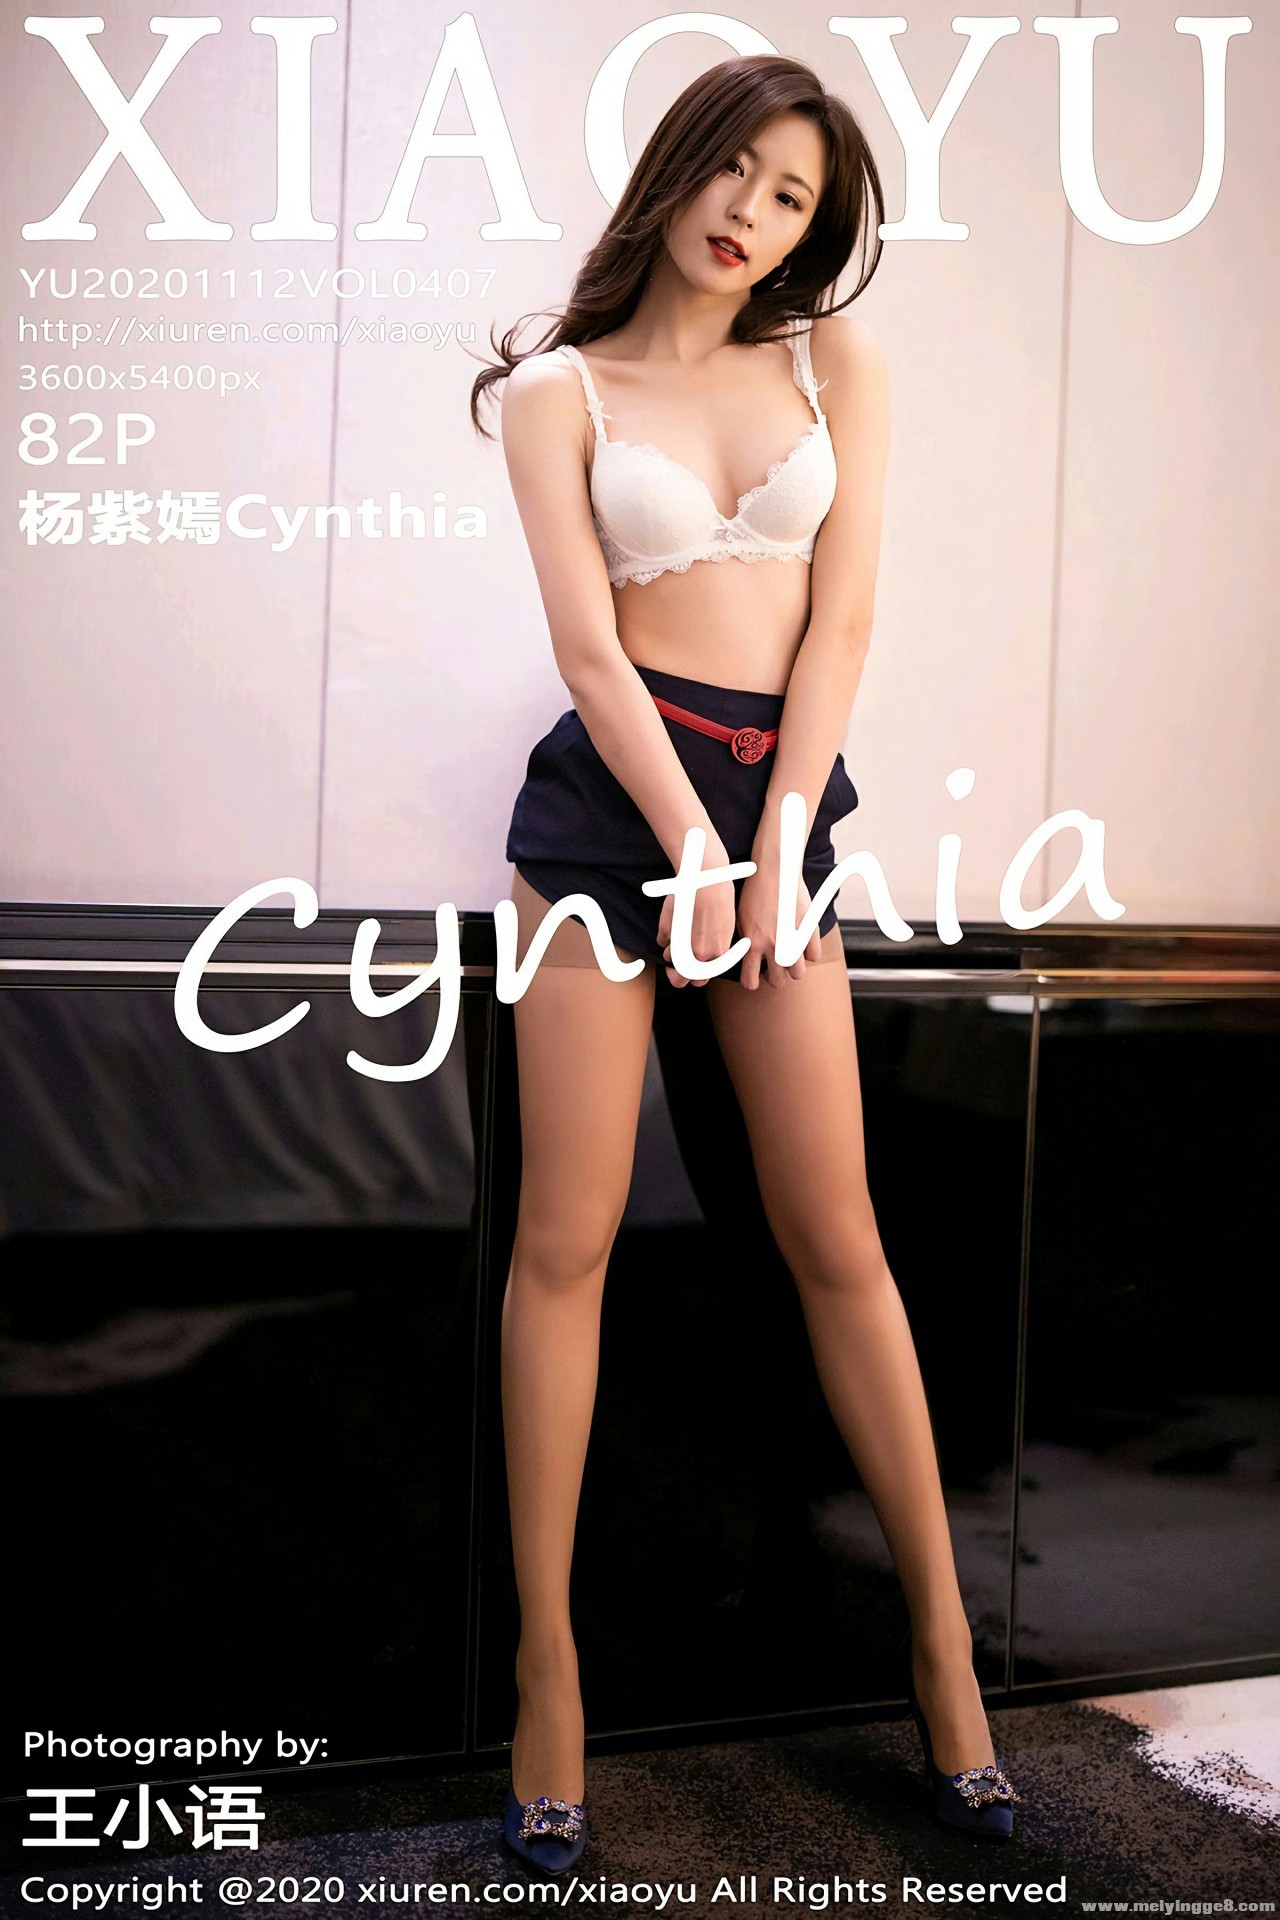 [XIAOYUﻭ] 2020.11.12 No.407 Cynthia